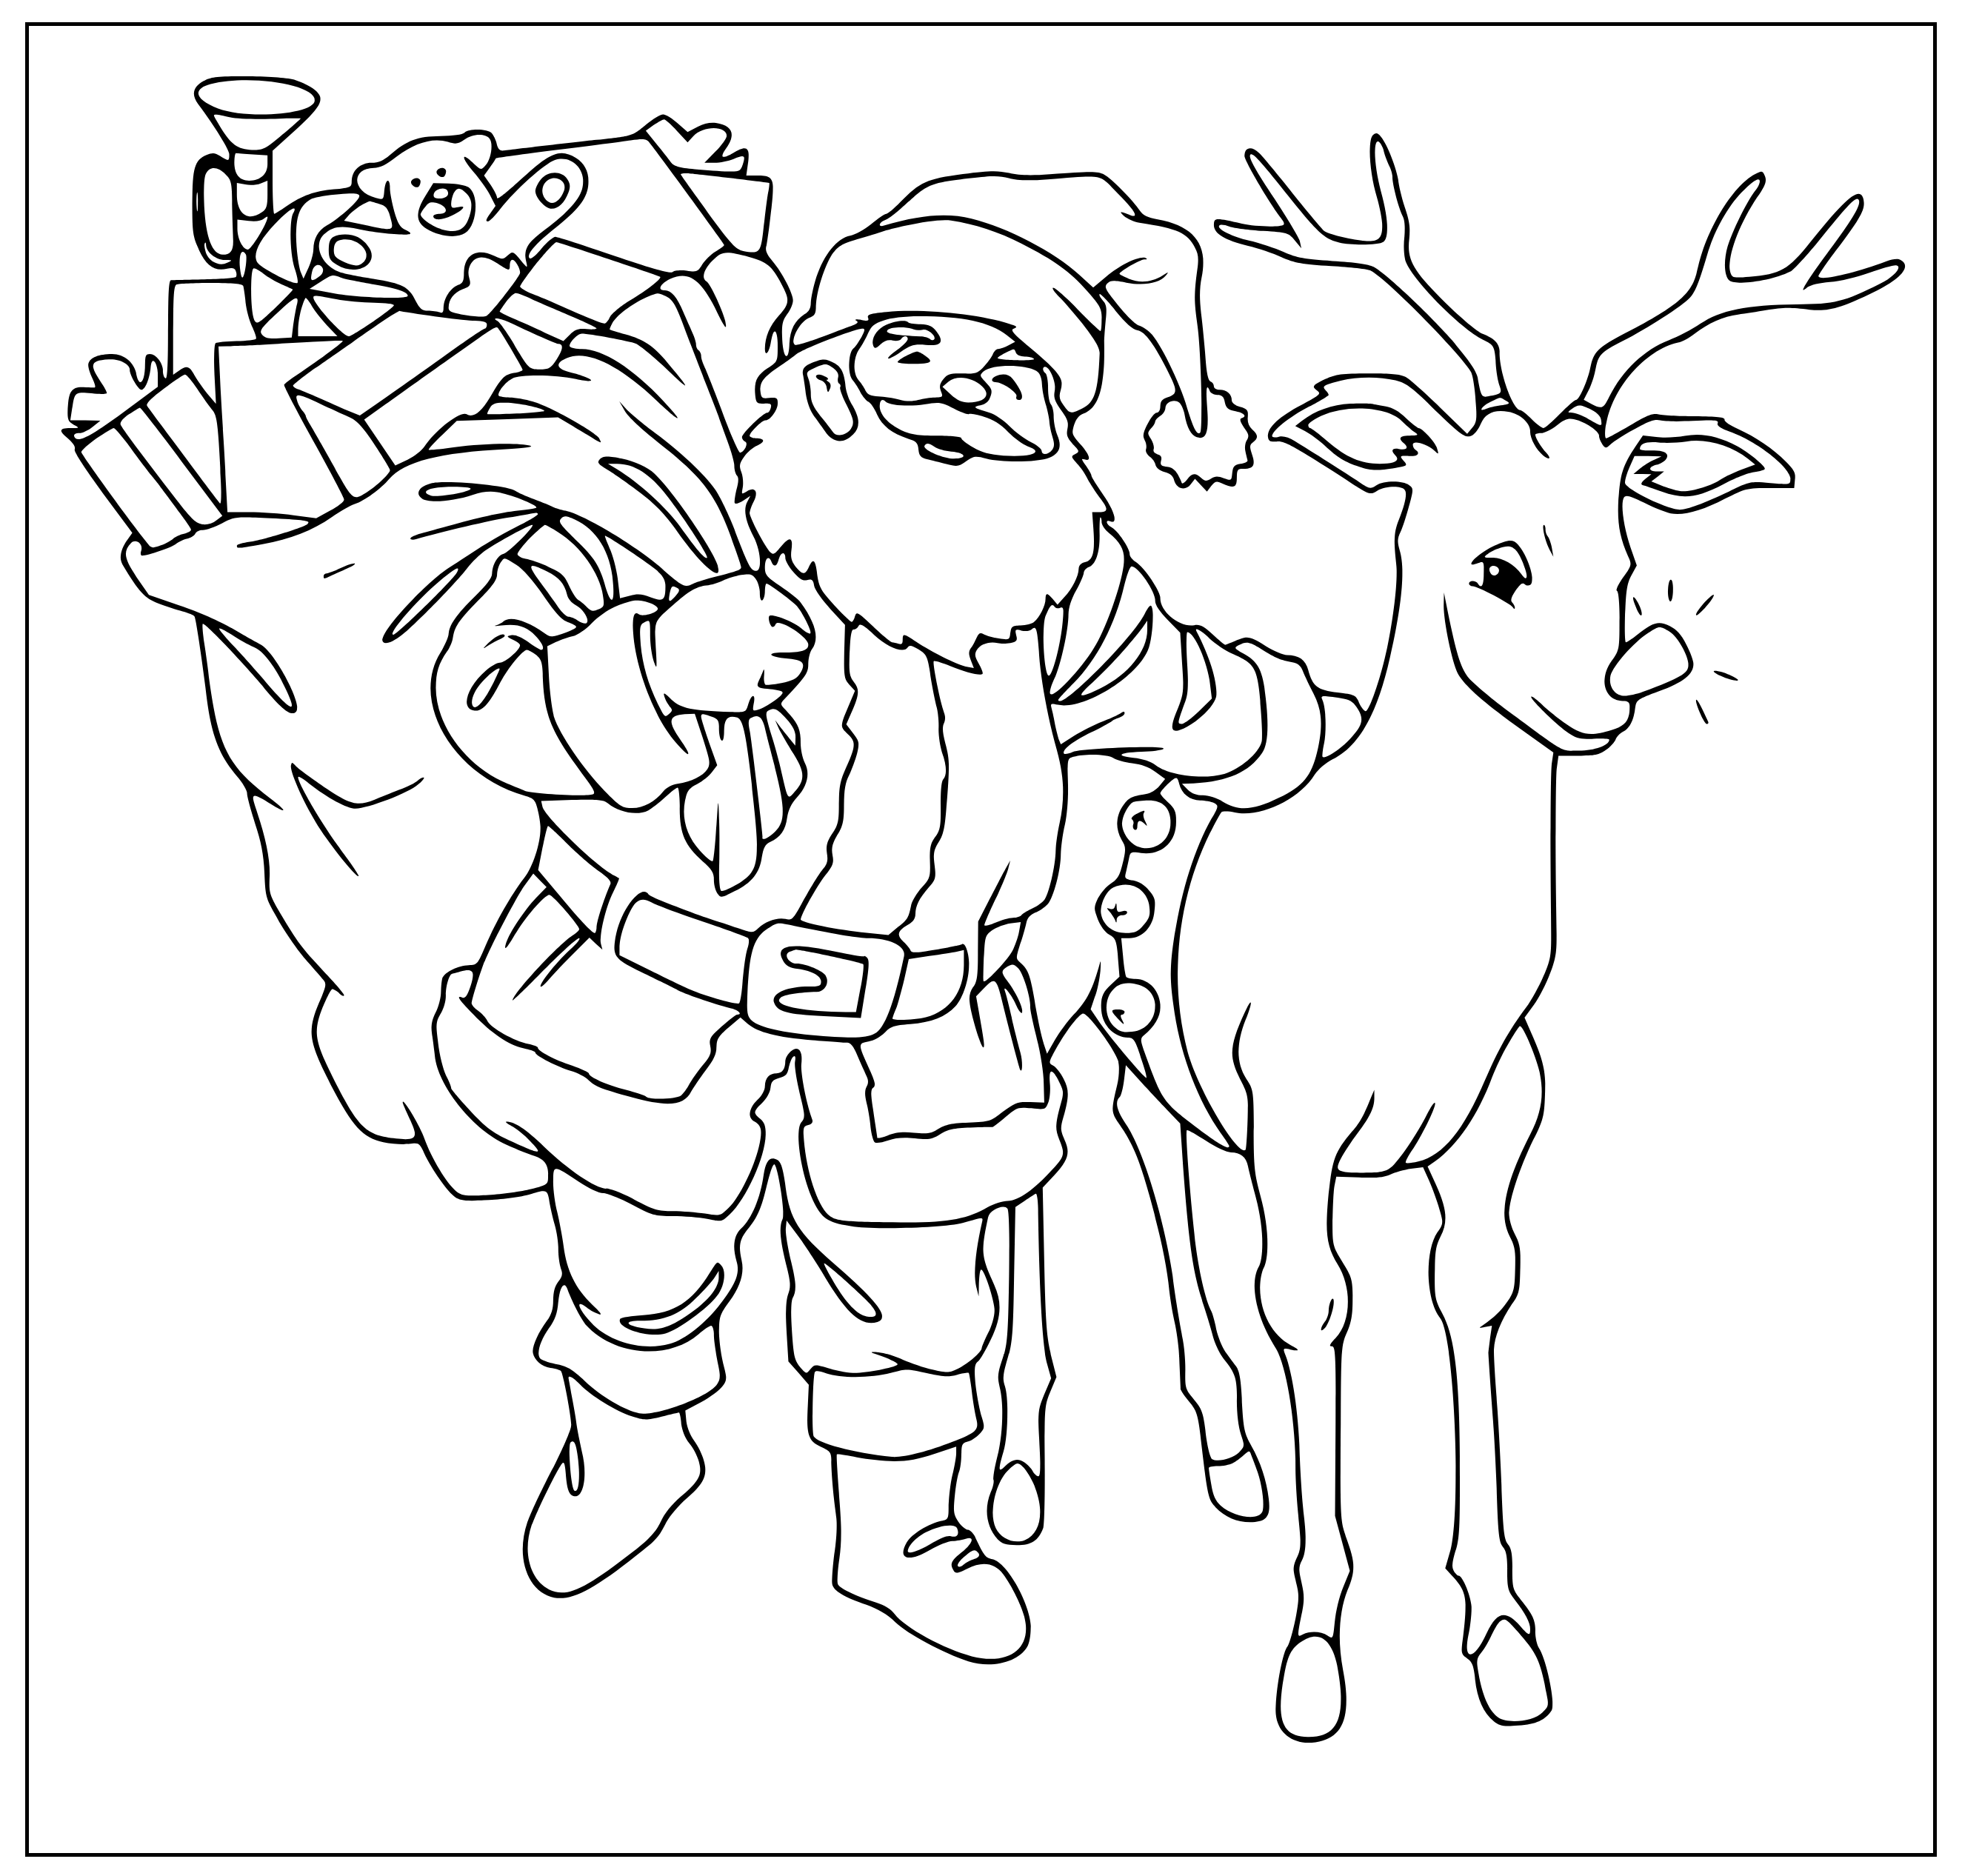 Printable Santa's reindeer Coloring Page for kids.